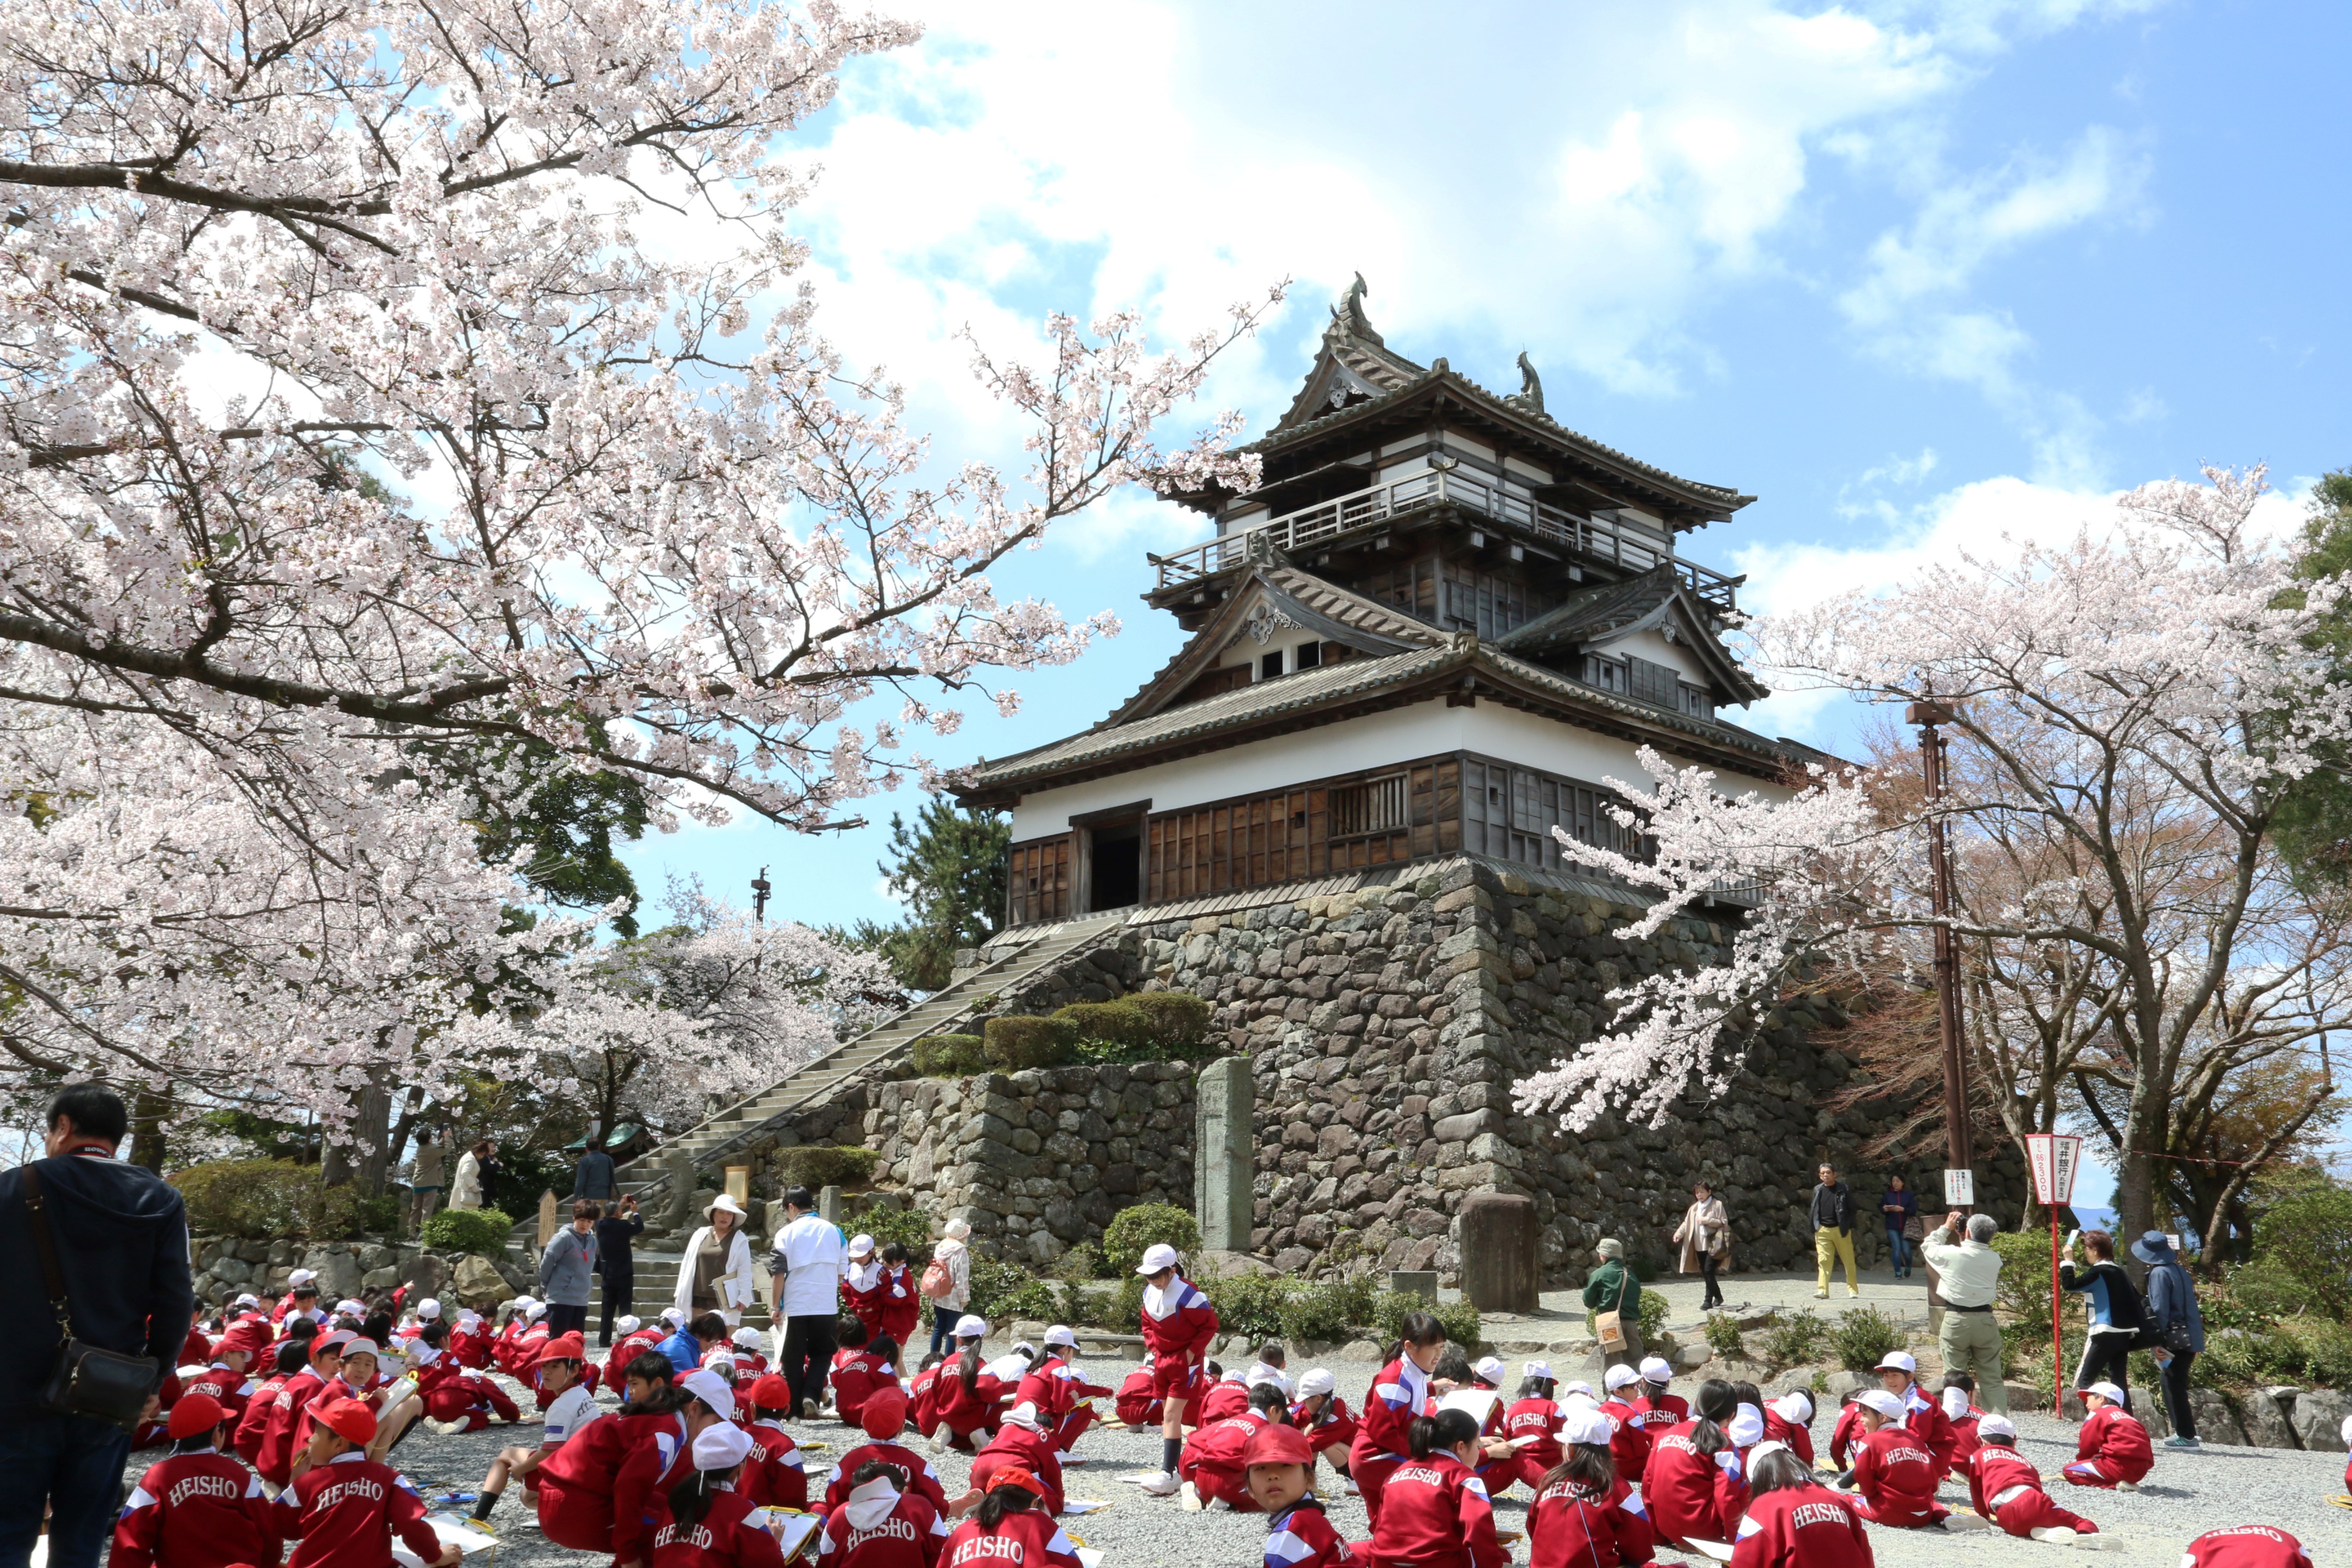 福井県坂井市 城下町を満開の桜が彩る 丸岡城桜まつりが開催